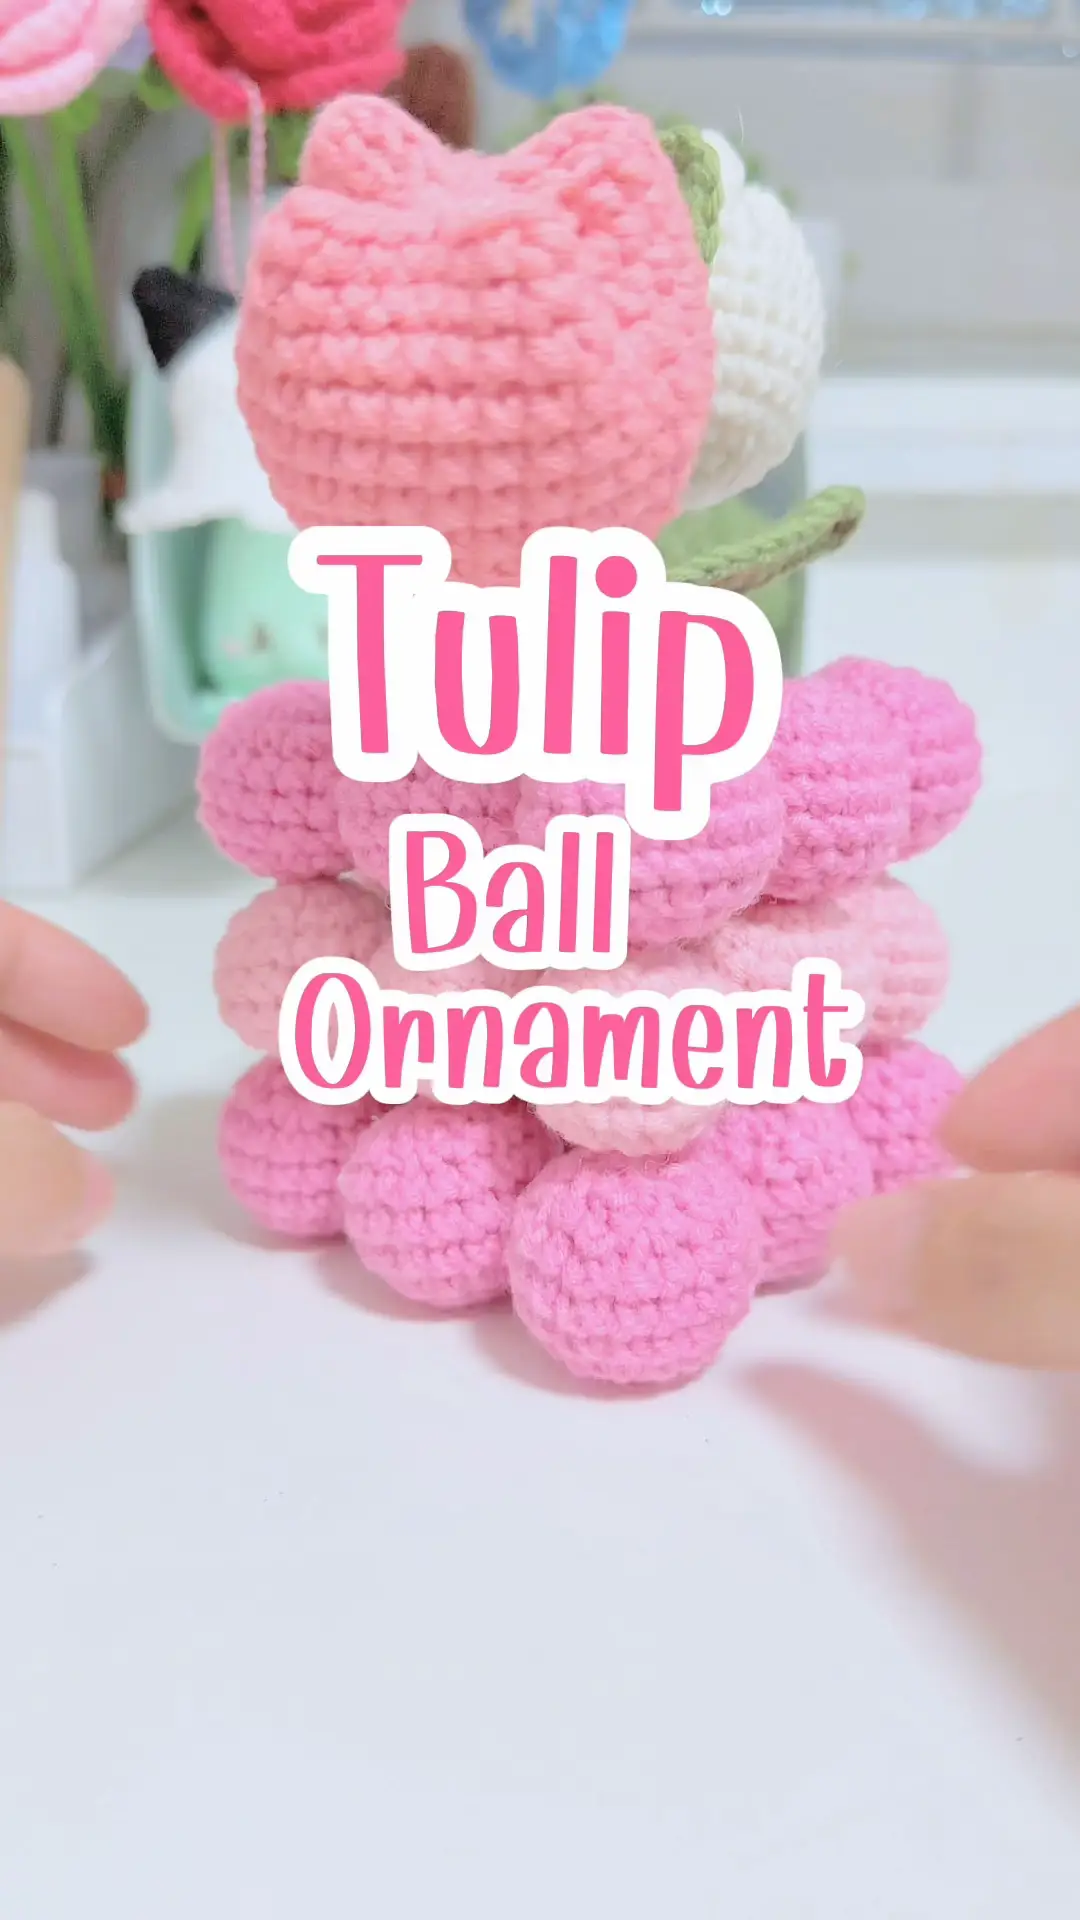 Beginner Diy Crochet Flower Kit Romantic Knitting Tulip - Temu